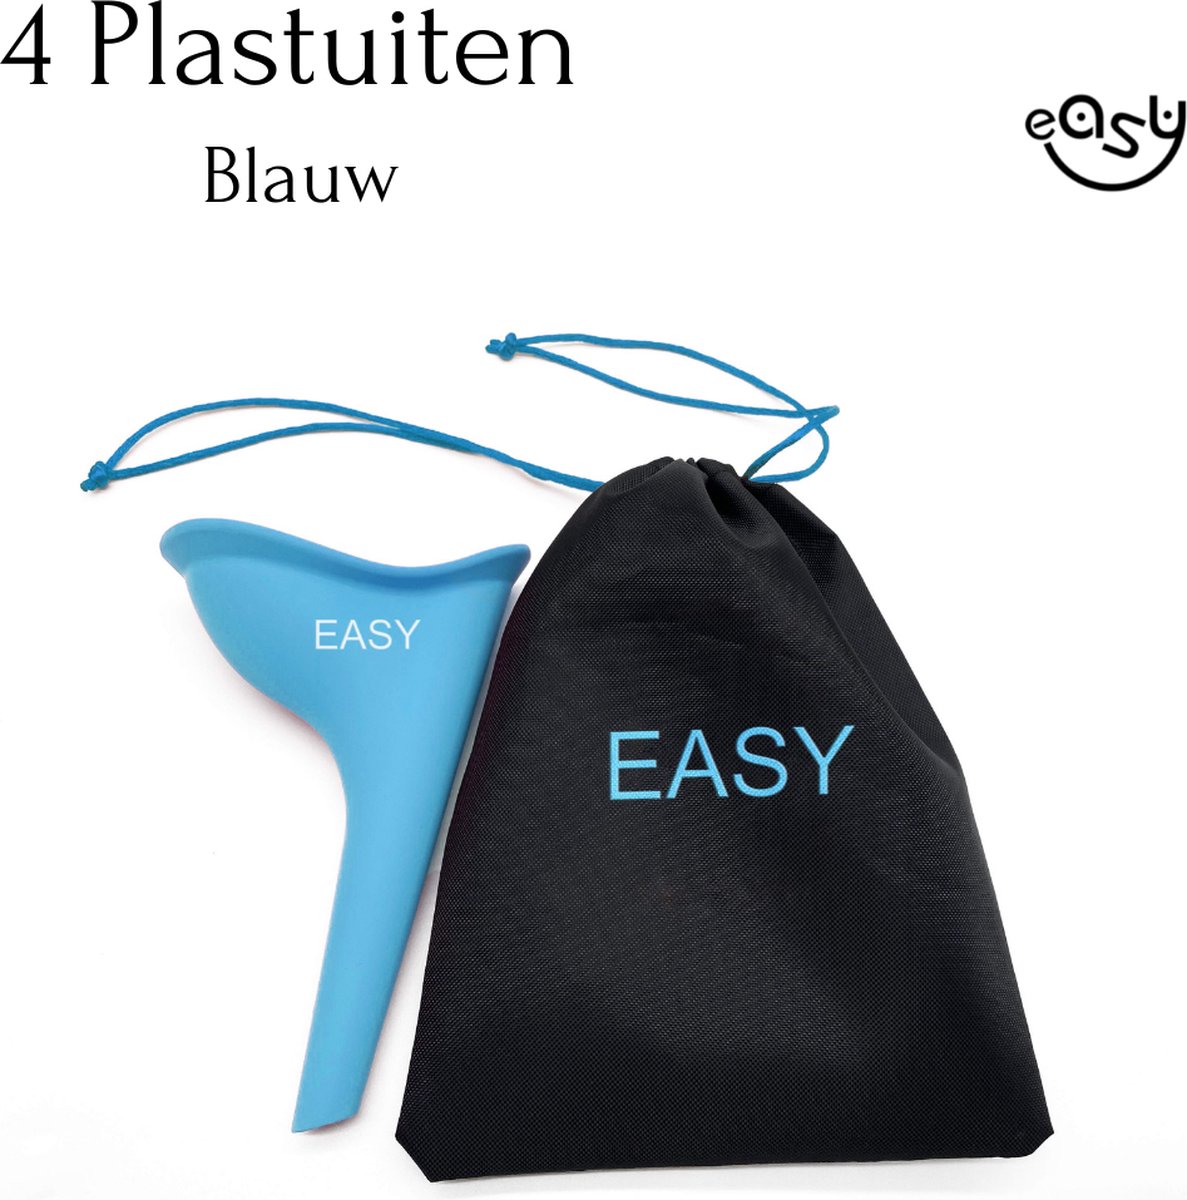 Plastuit - Blauw 4  - Plastuit voor vrouwen - Plastuitjes - Urinaal - Siliconen-plaskoker - Plas zak - easy